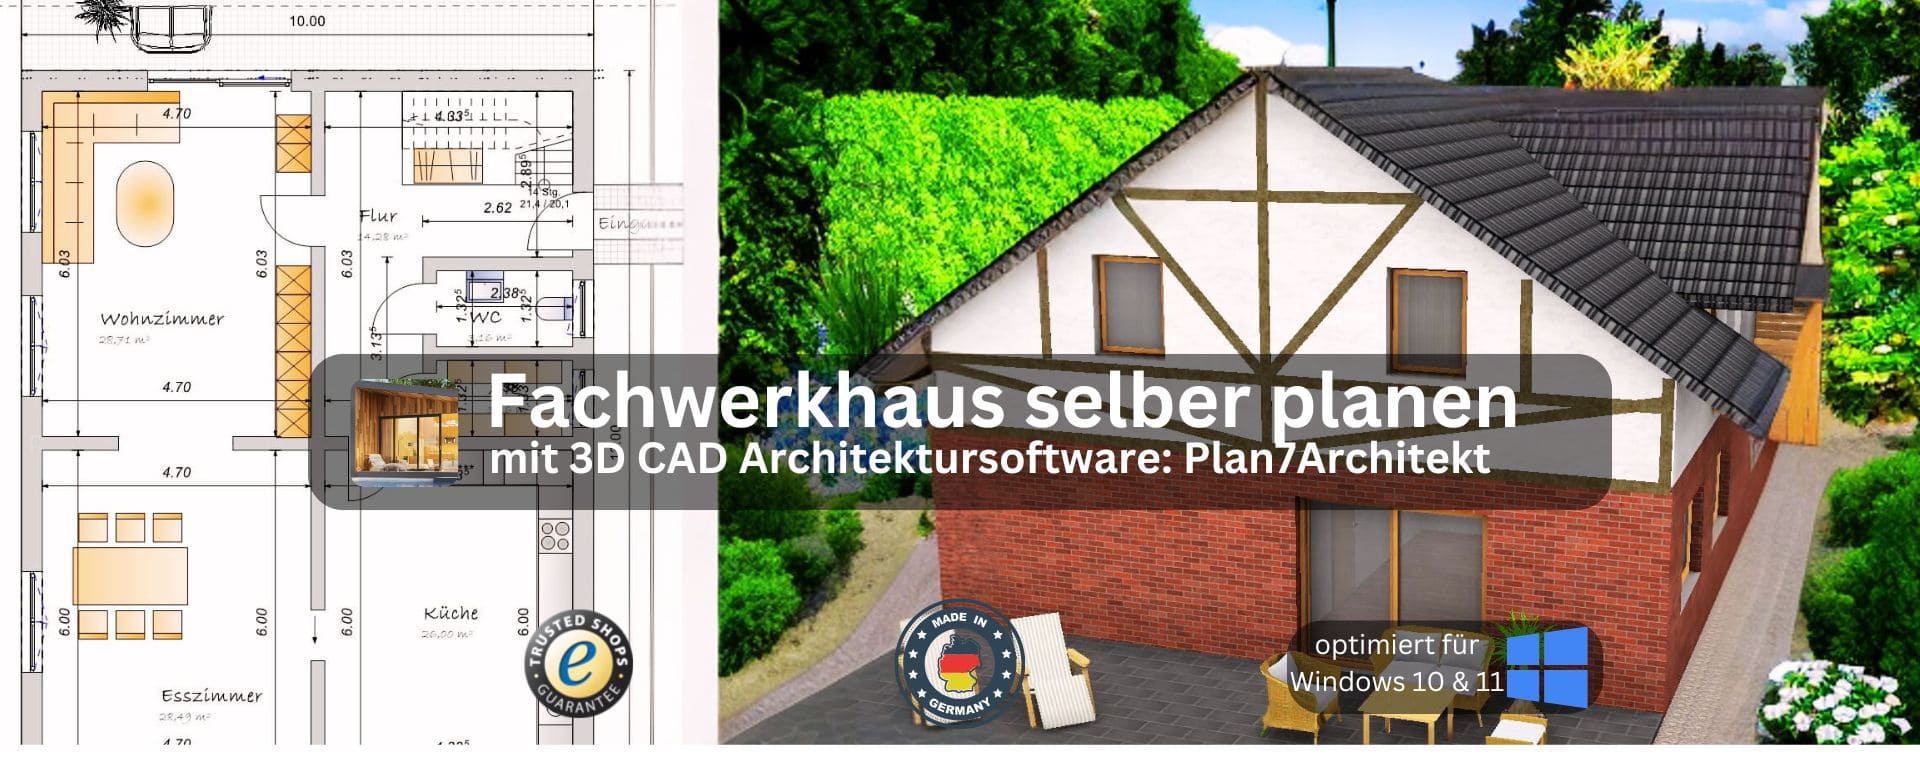 Fachwerkhaus selber planen mit dem Plan7Architekt